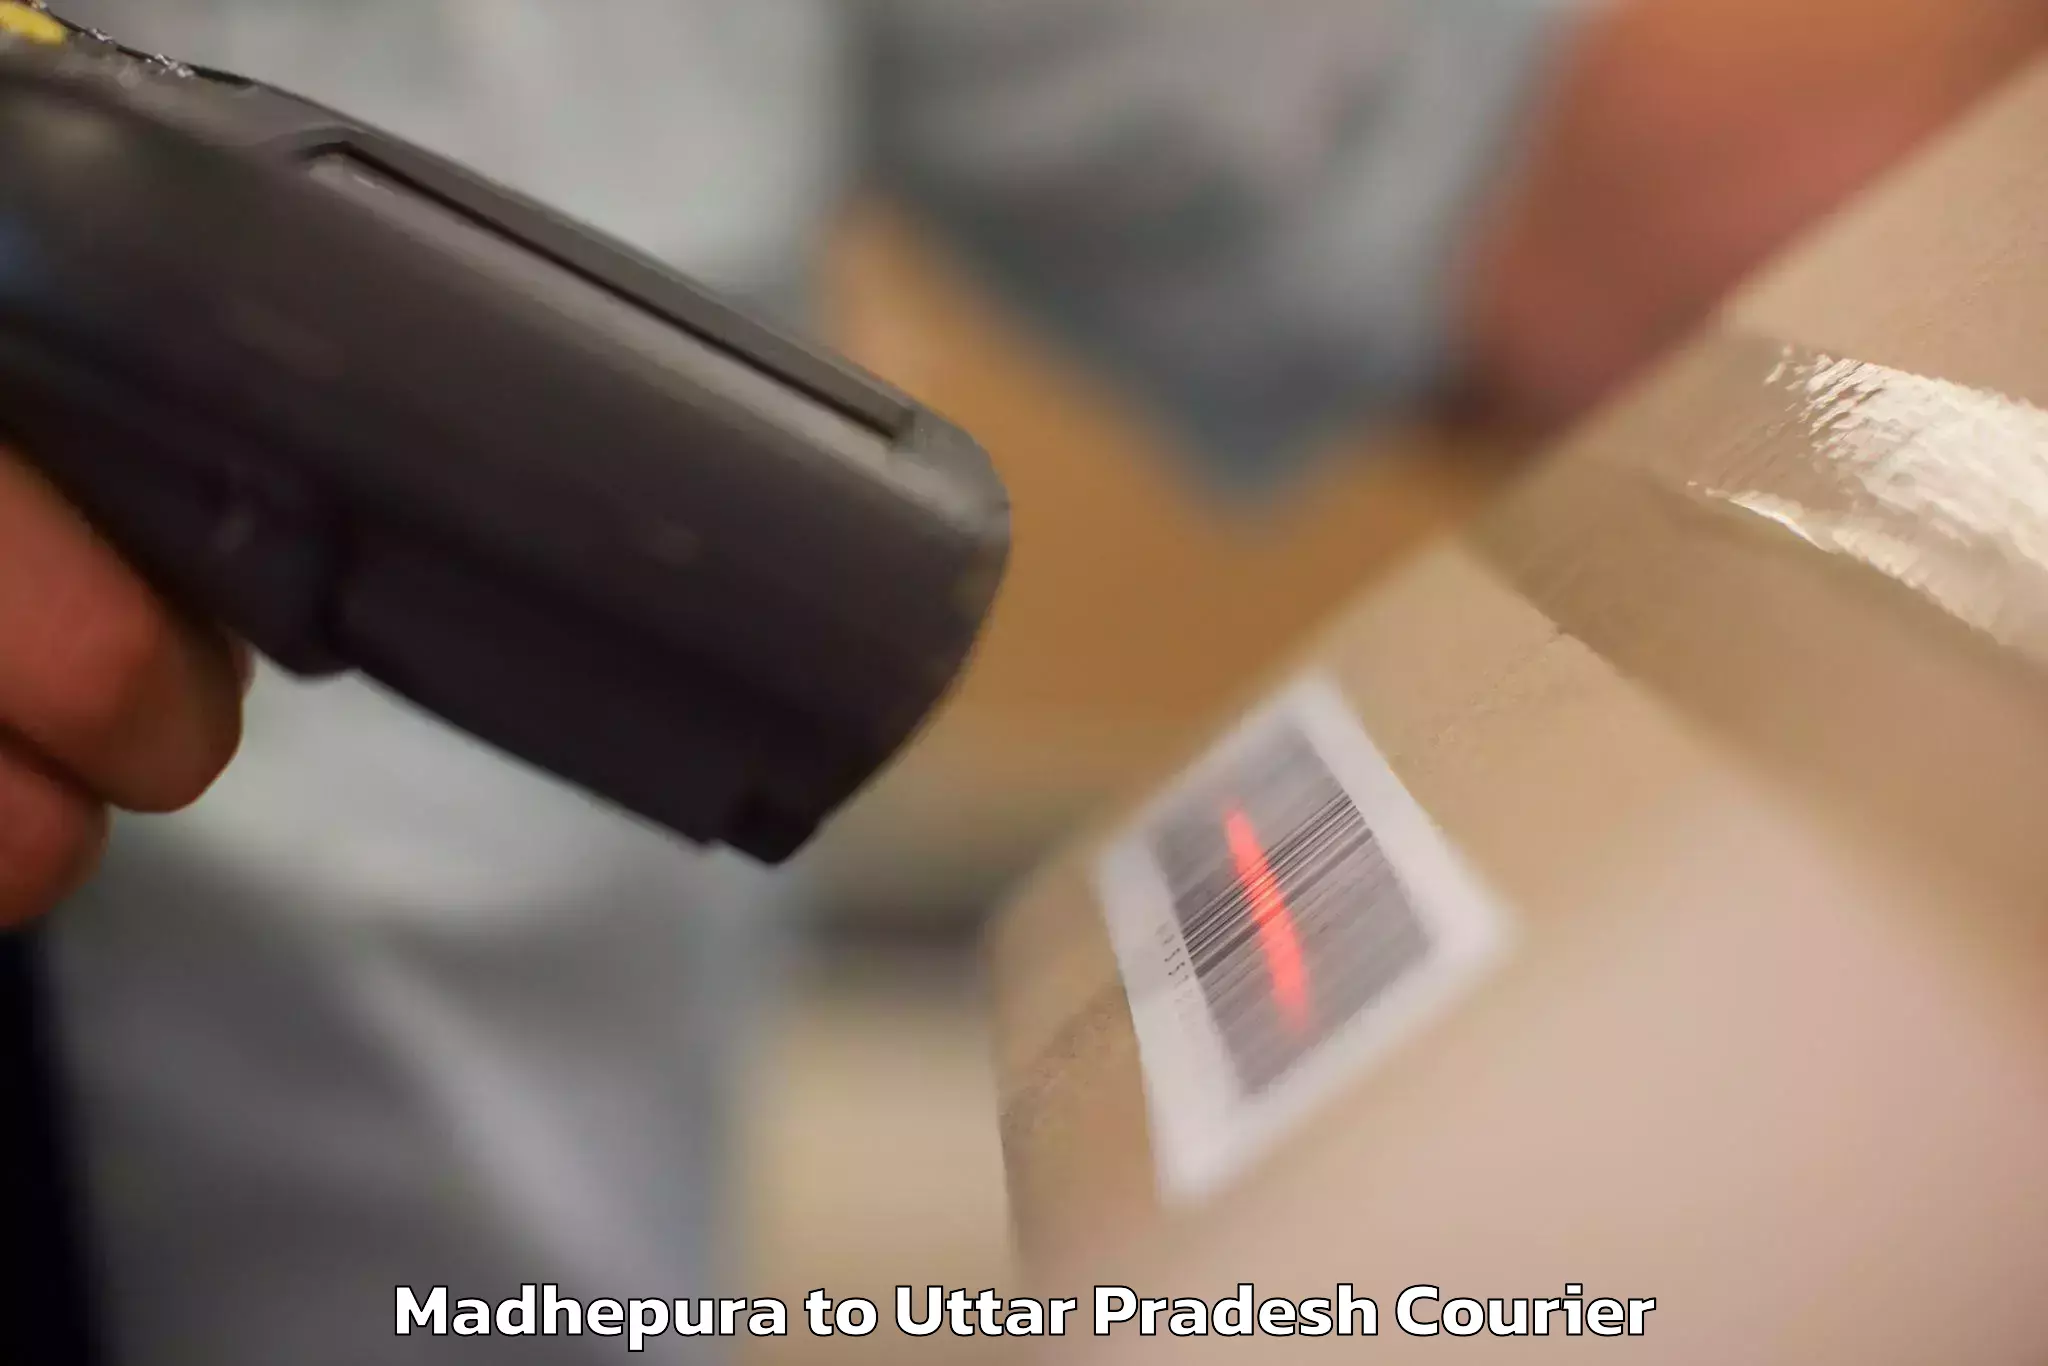 Luggage forwarding service Madhepura to Bhadohi